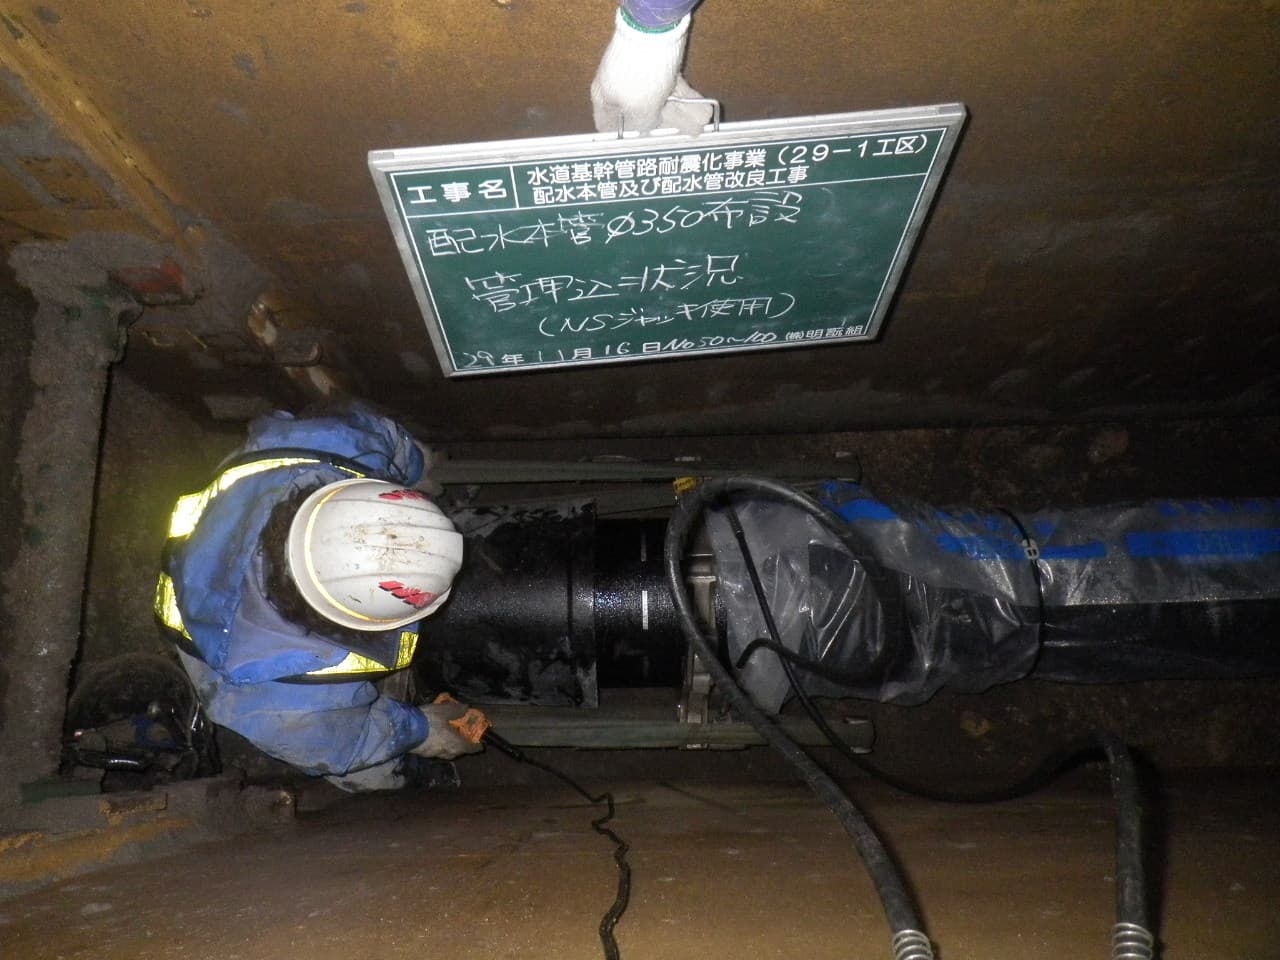 水道基幹管路耐震化事業（２９－１工区）配水本管及び配水管改良工事